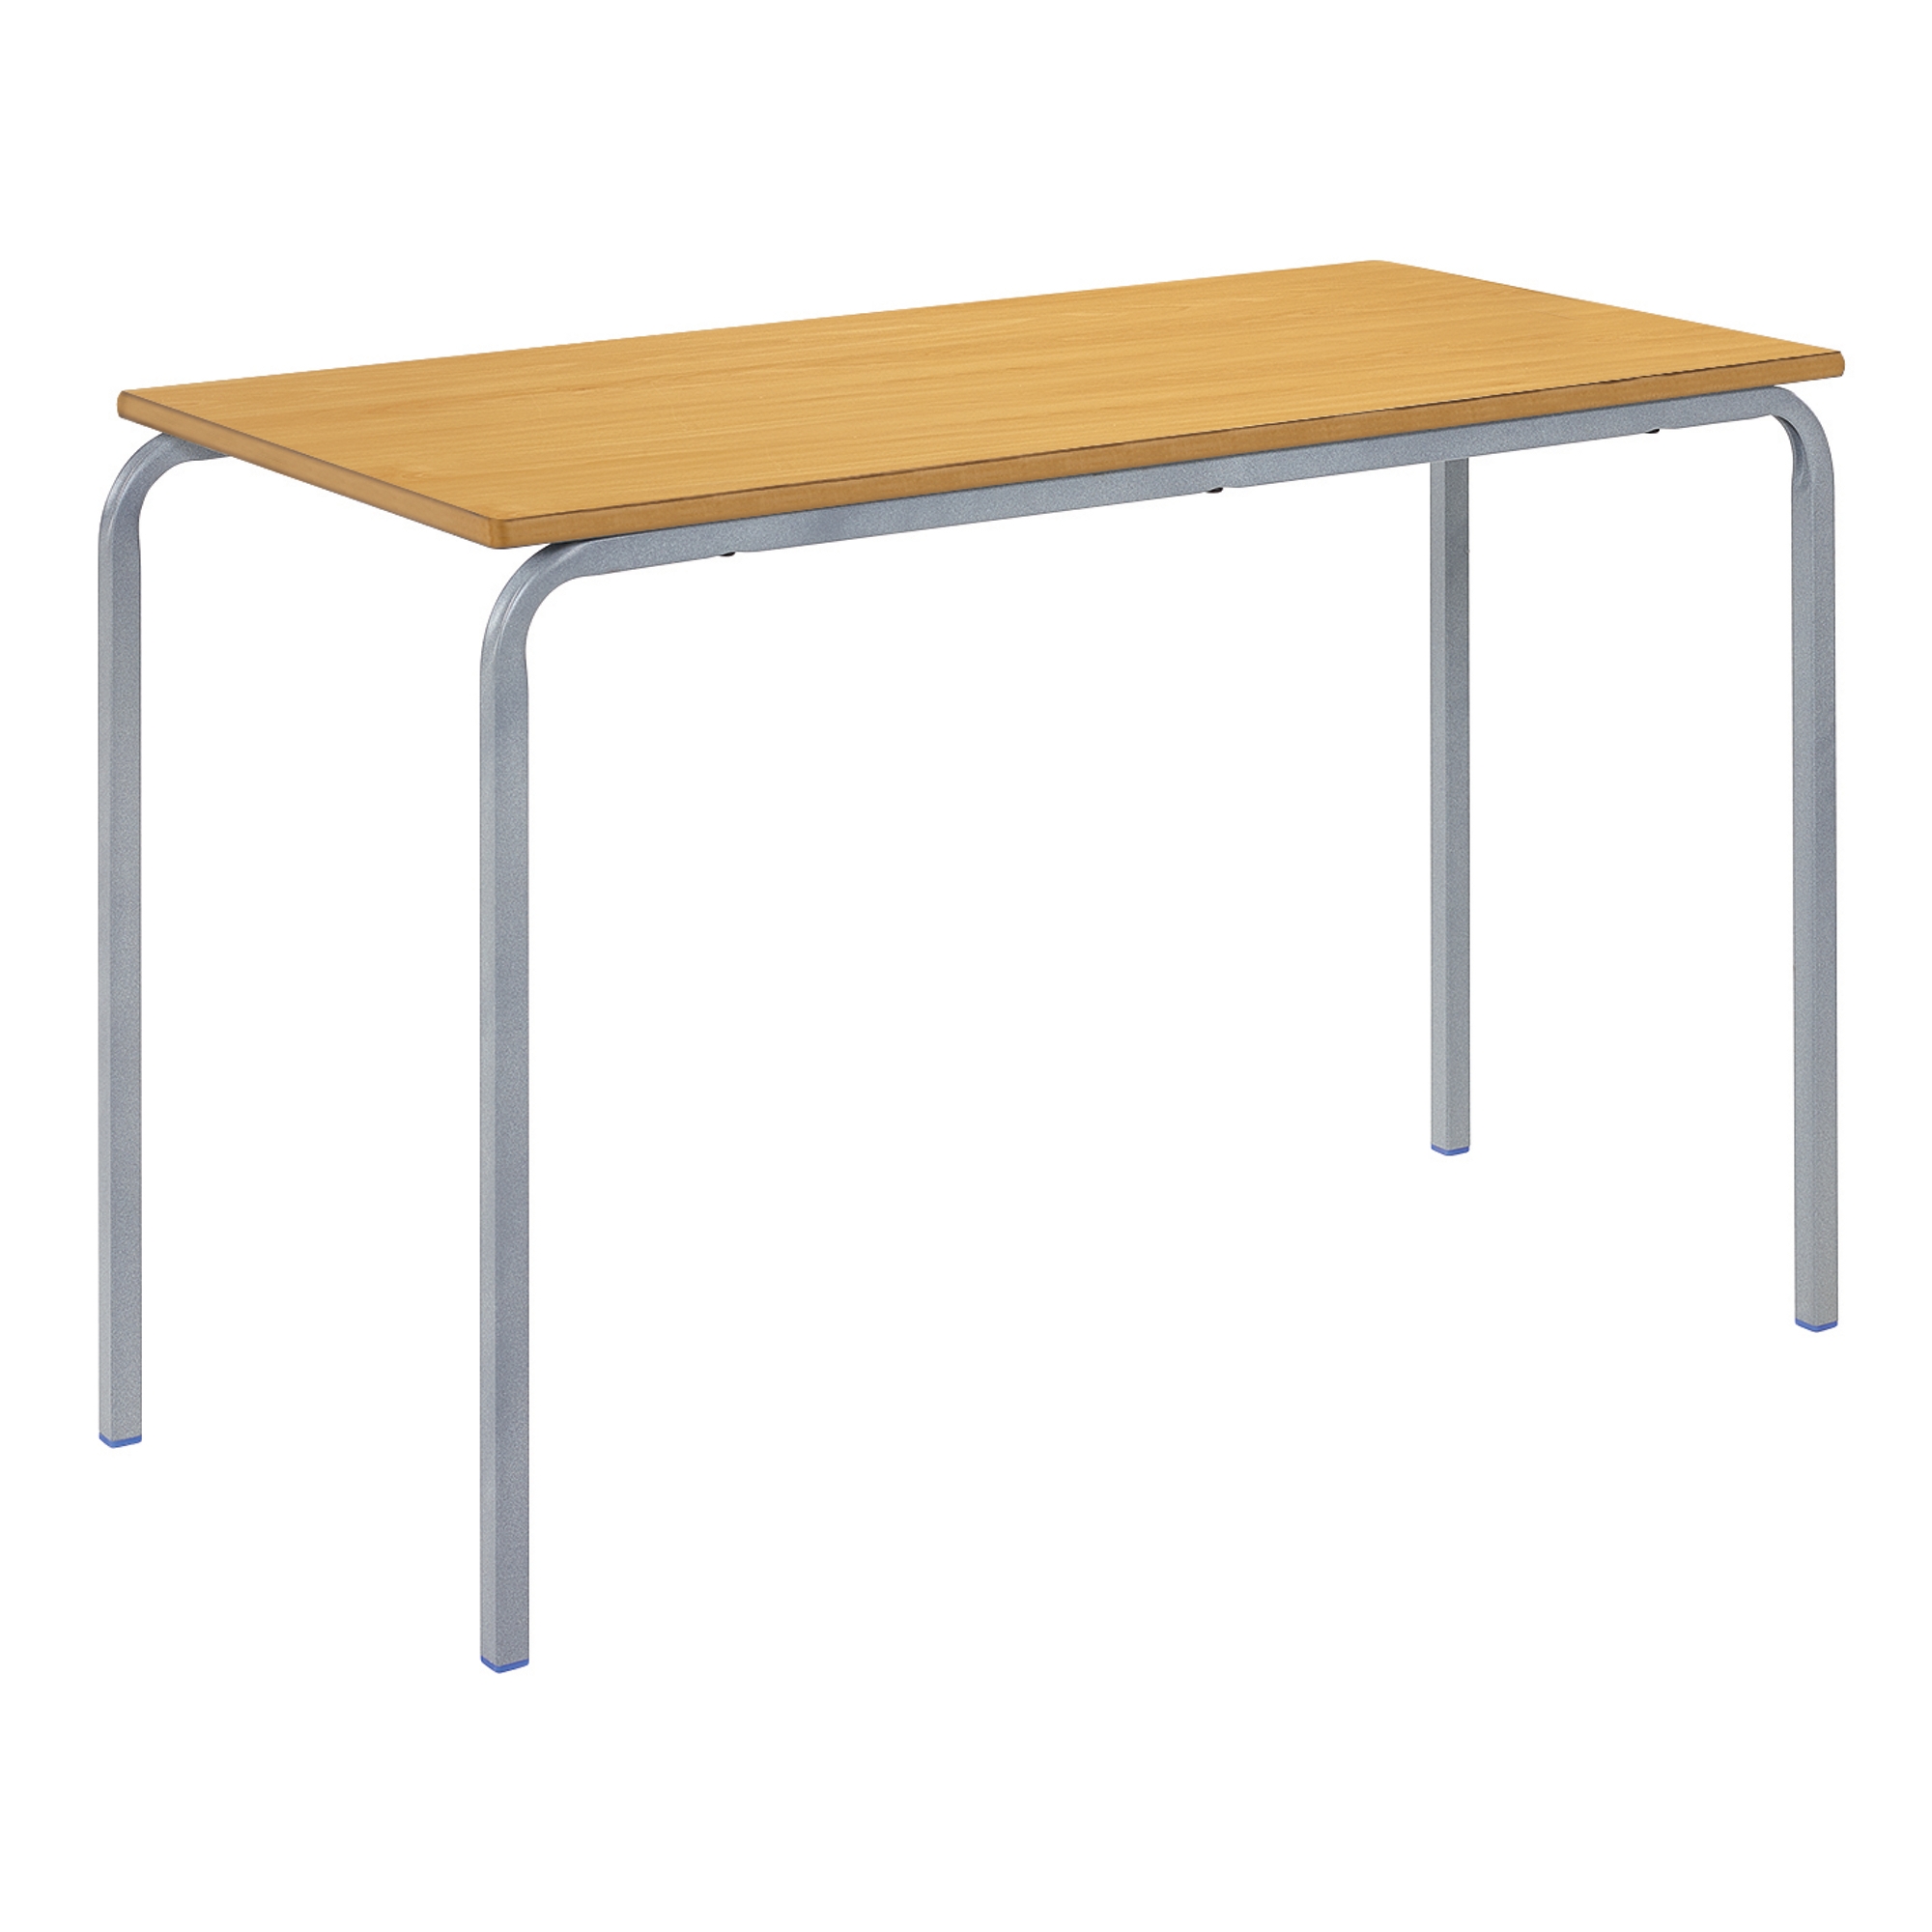 Classmates Rectangular Crushed Bent Classroom Table - 1100 x 550 x 760mm - Beech